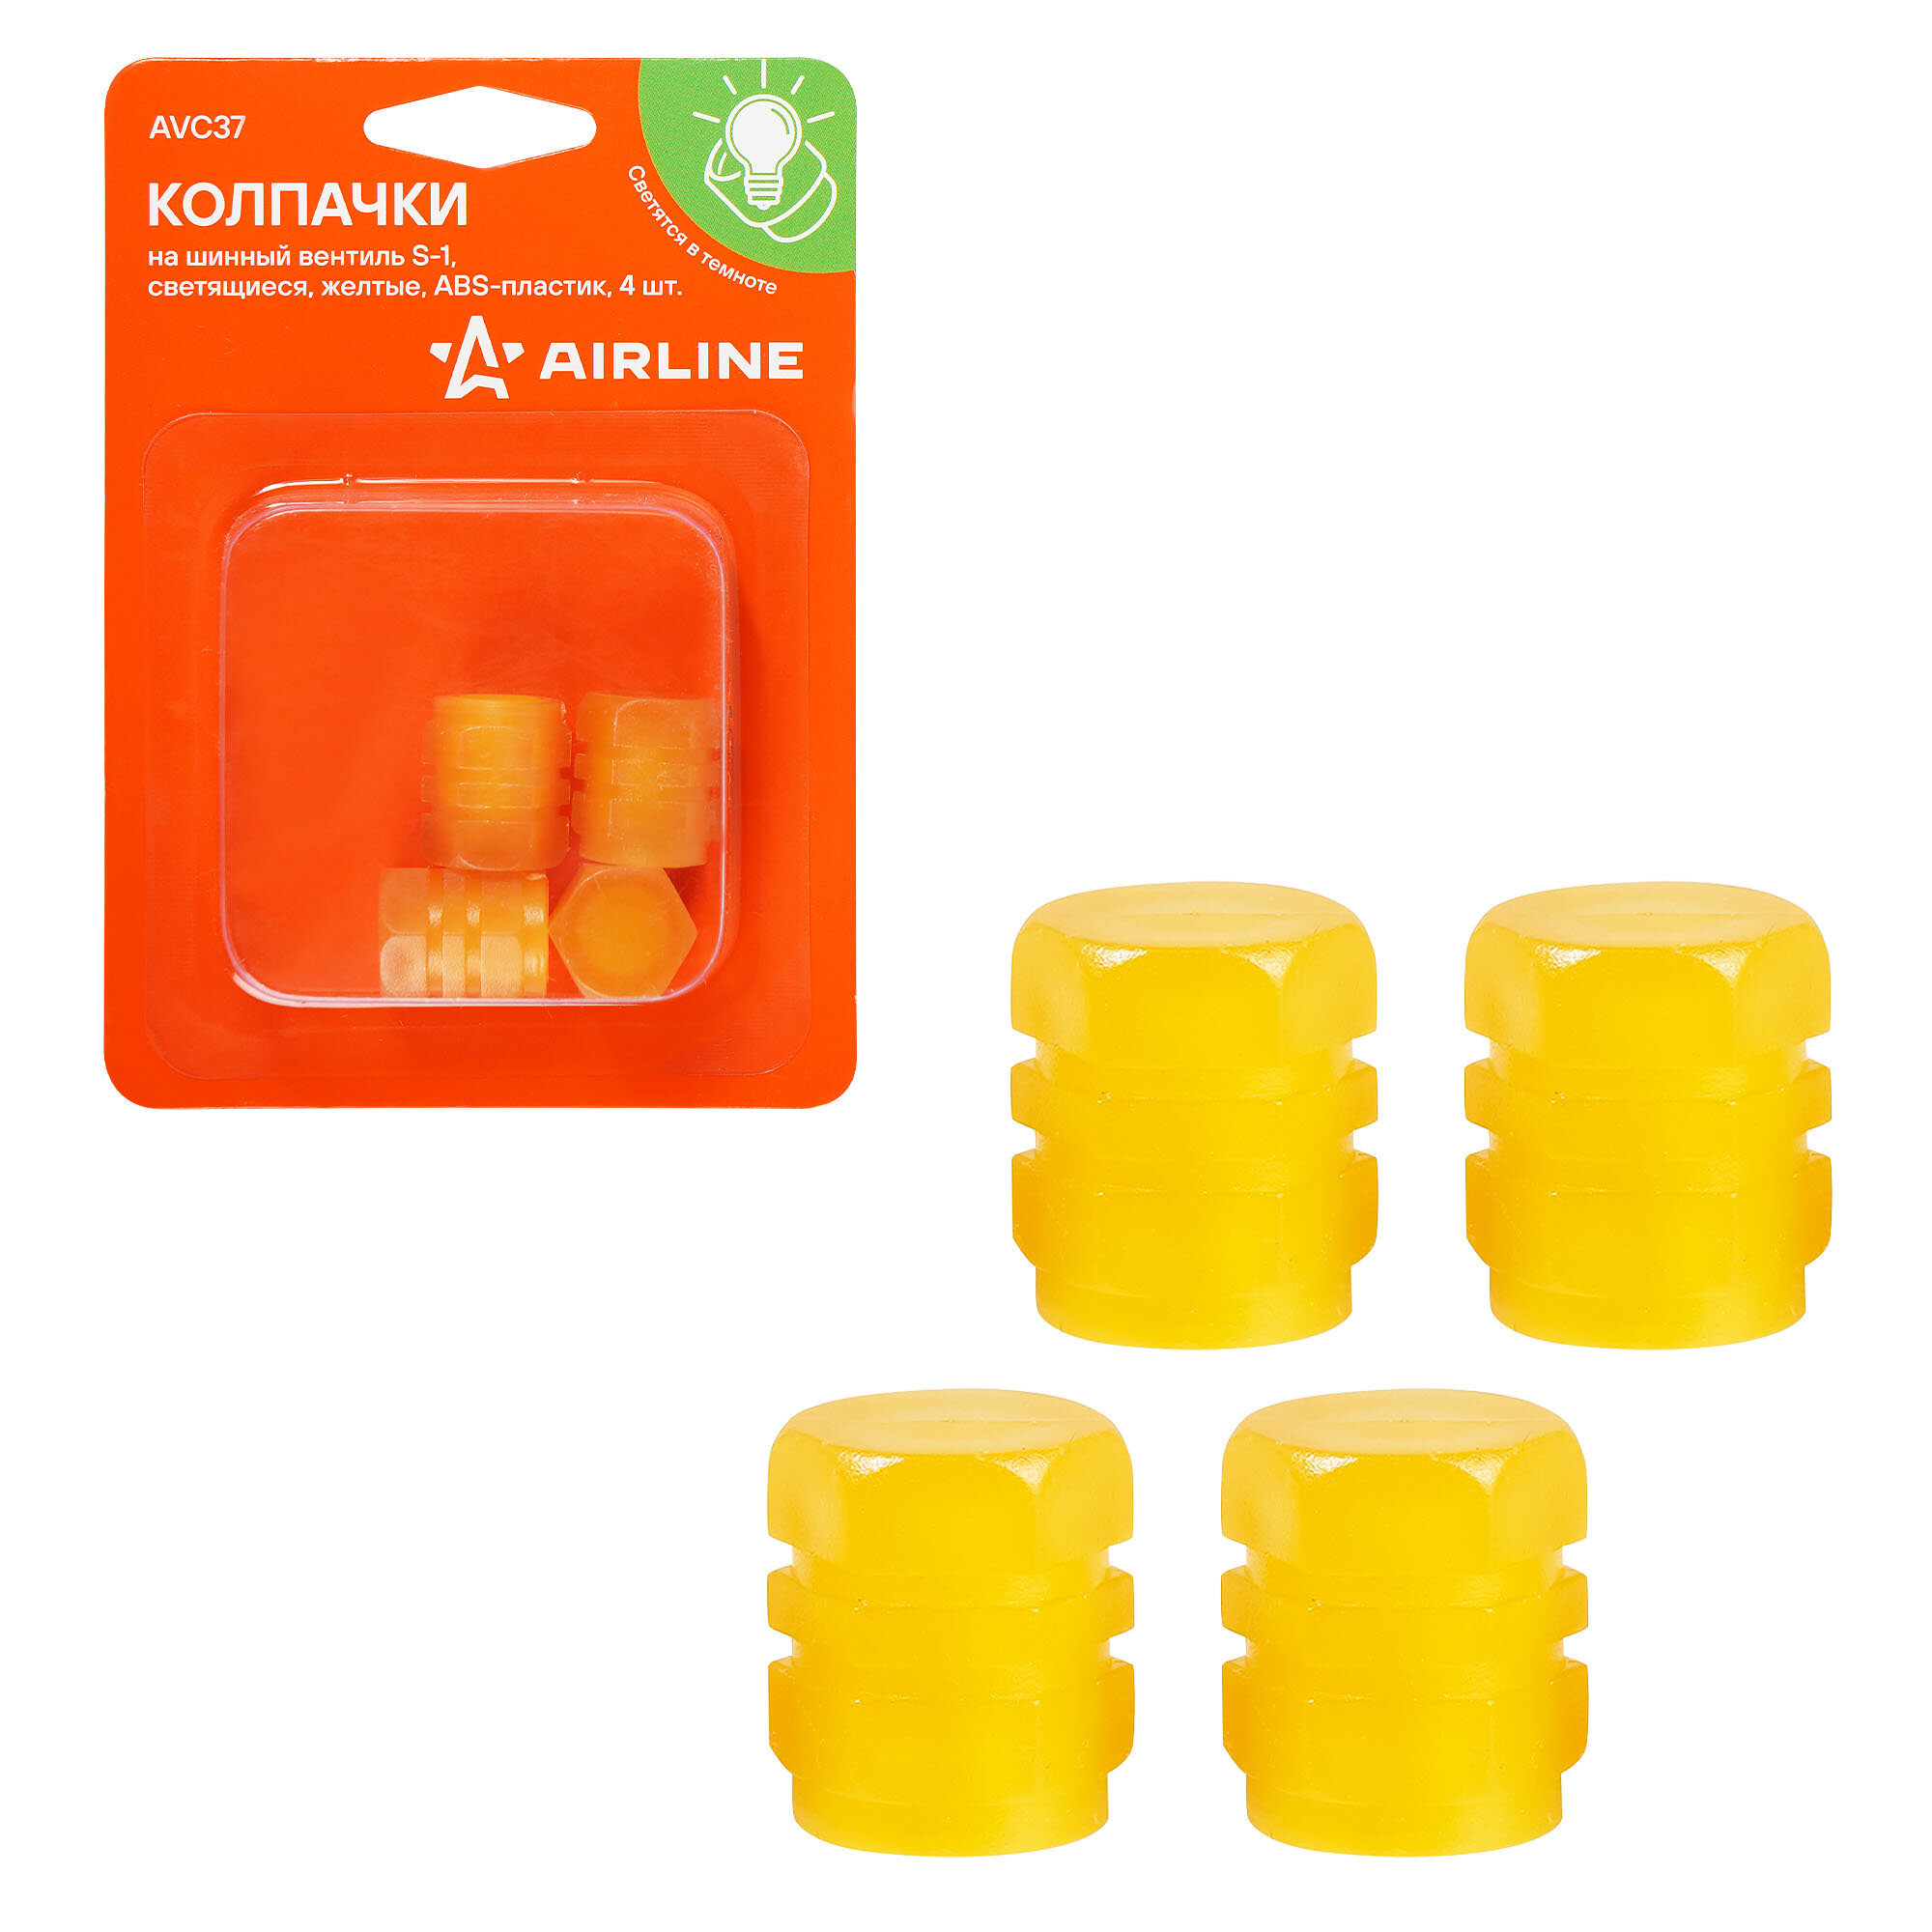 Колпачки на шинный вентиль S-1 светящиеся желтые ABS-пластик 4 шт. AVC37 AIRLINE